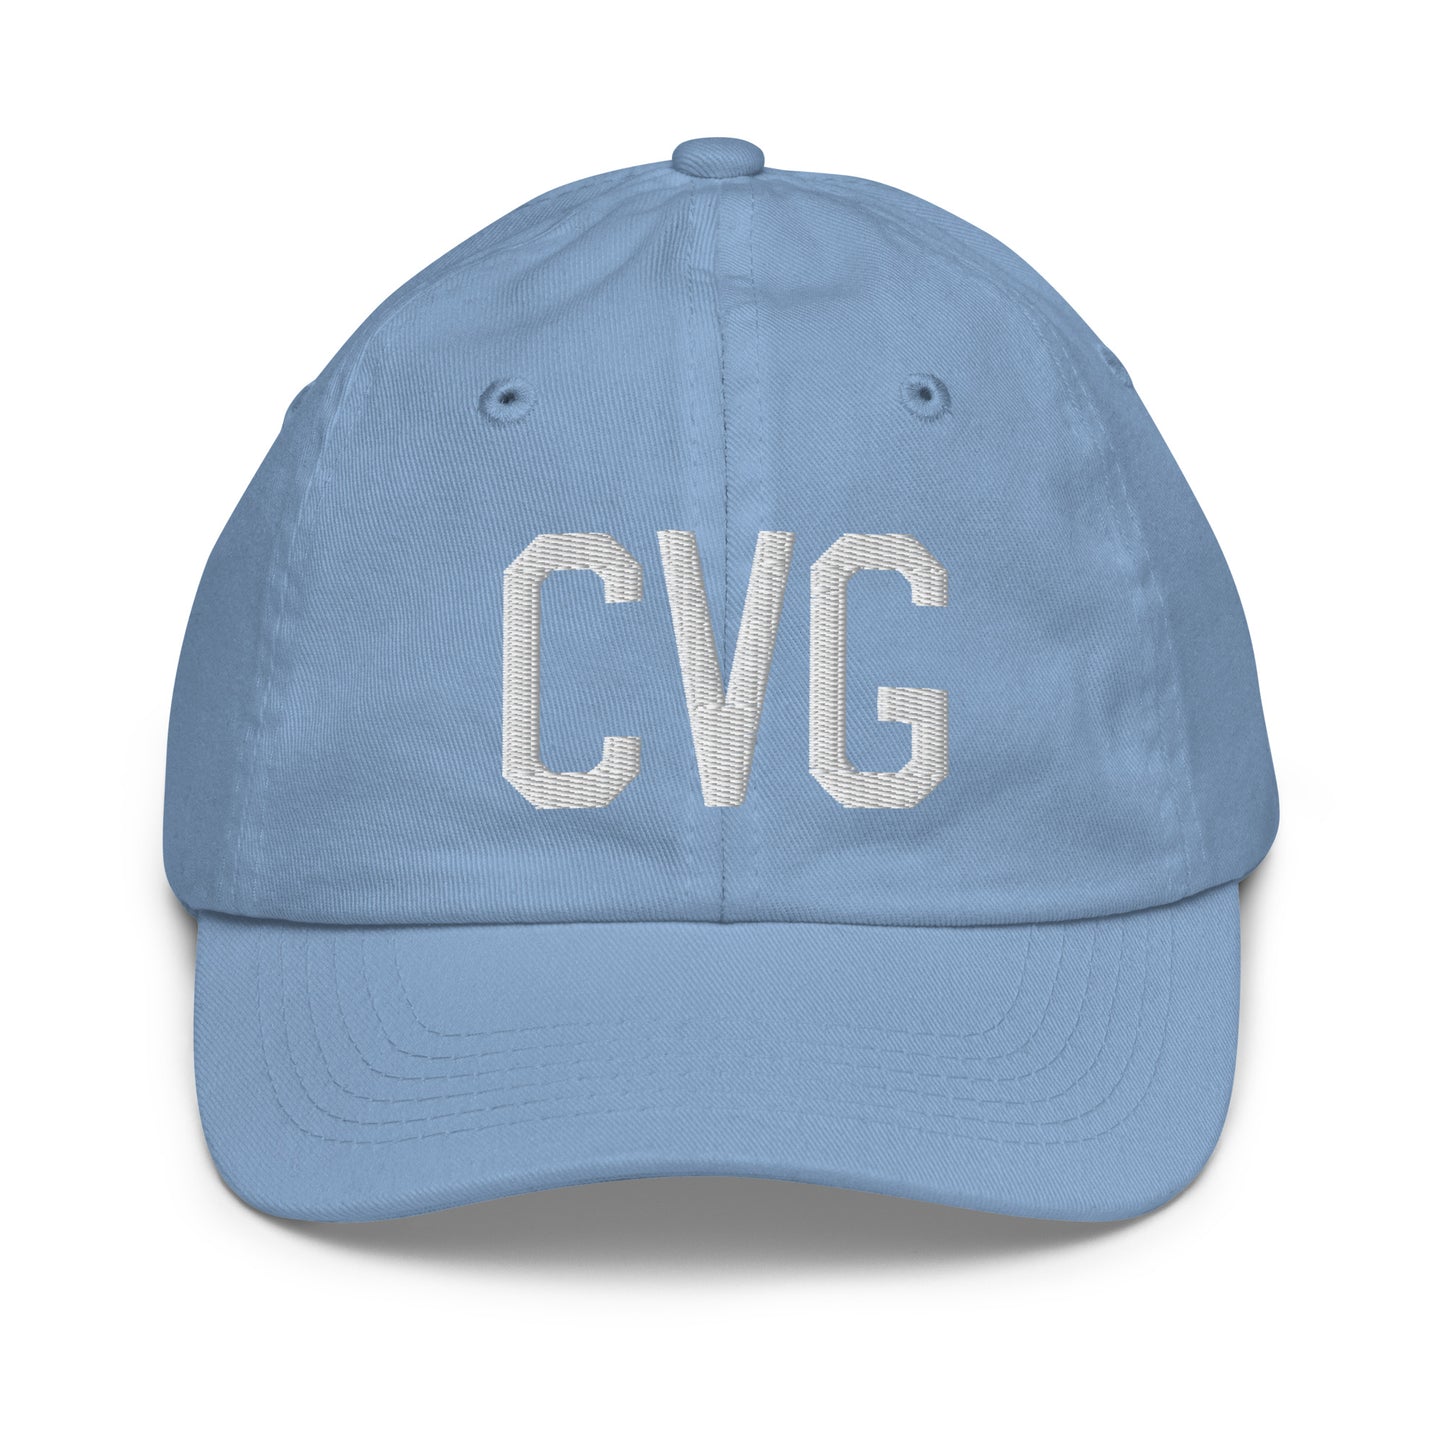 Airport Code Kid's Baseball Cap - White • CVG Cincinnati • YHM Designs - Image 22